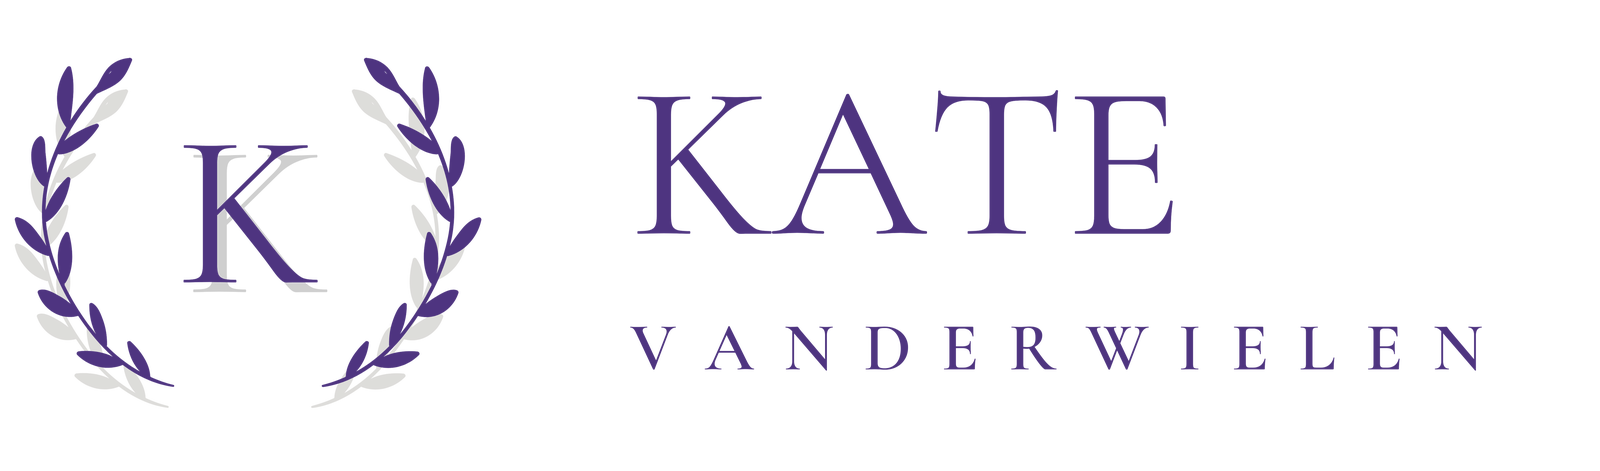 Kate Vanderwielen - News